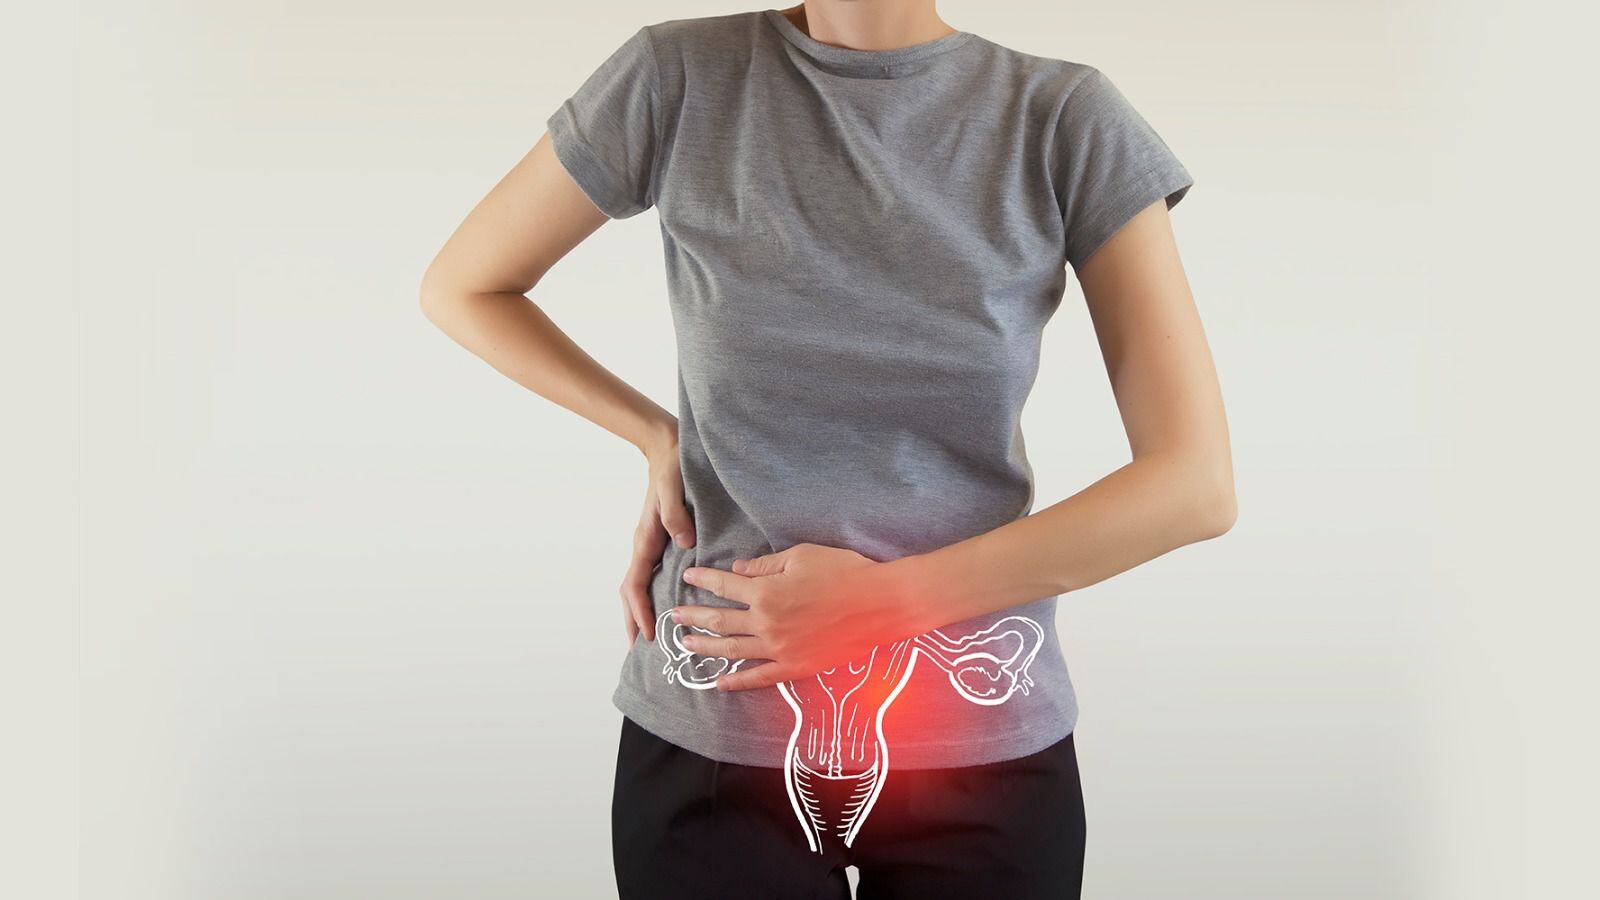 Cáncer de ovario: ¿Qué origina esta enfermedad y cuáles son los síntomas?